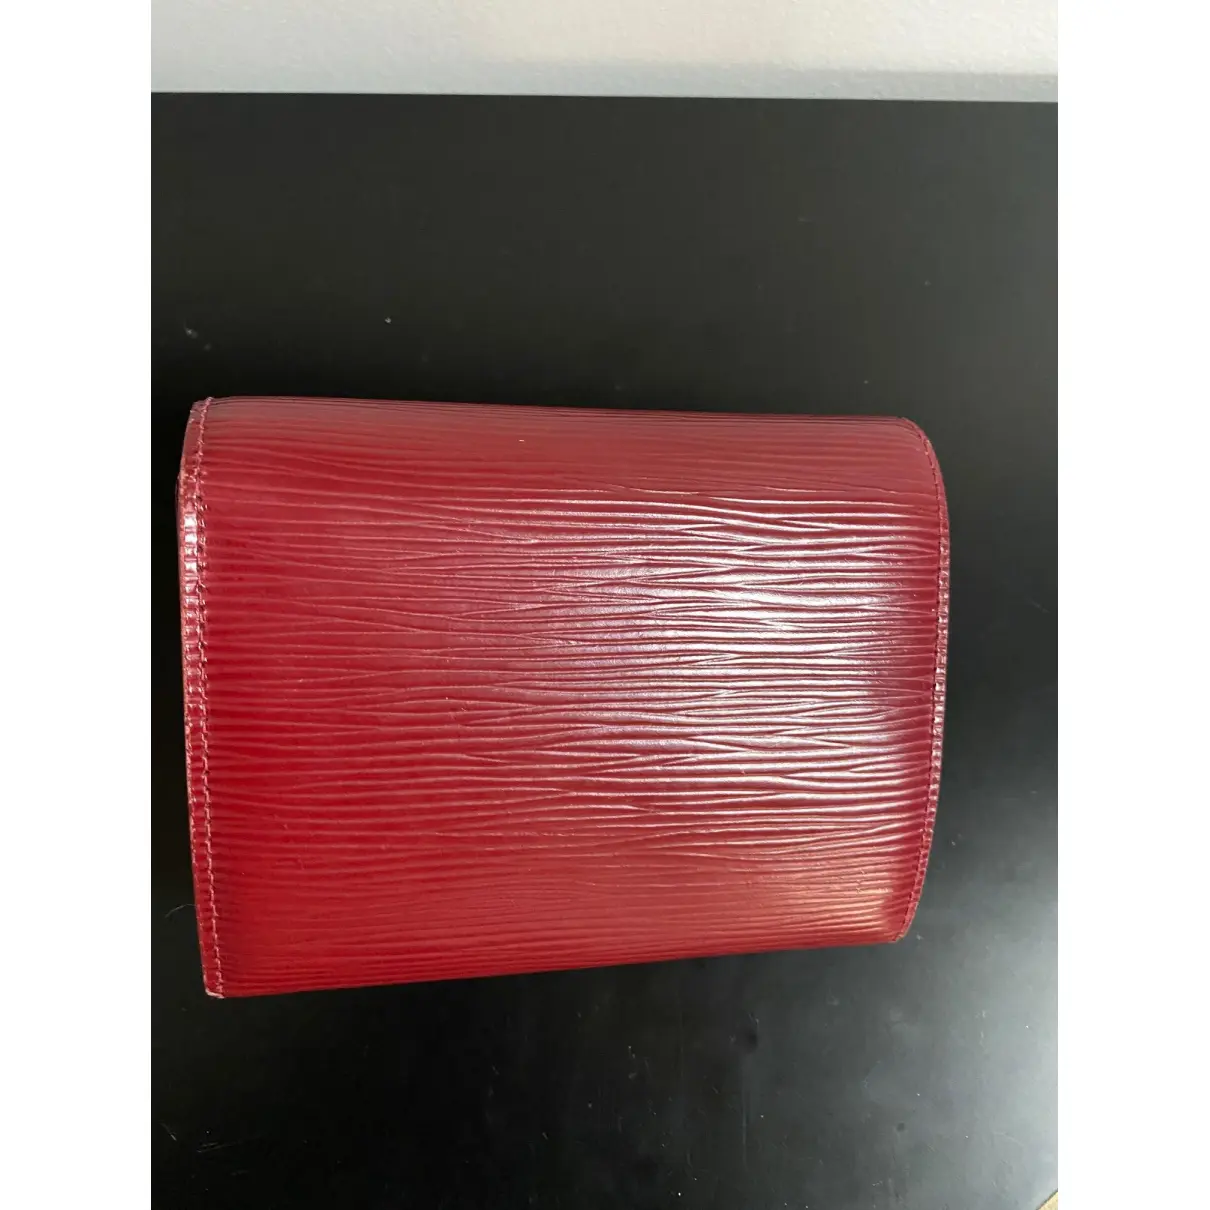 Buy Louis Vuitton Eugénie leather wallet online